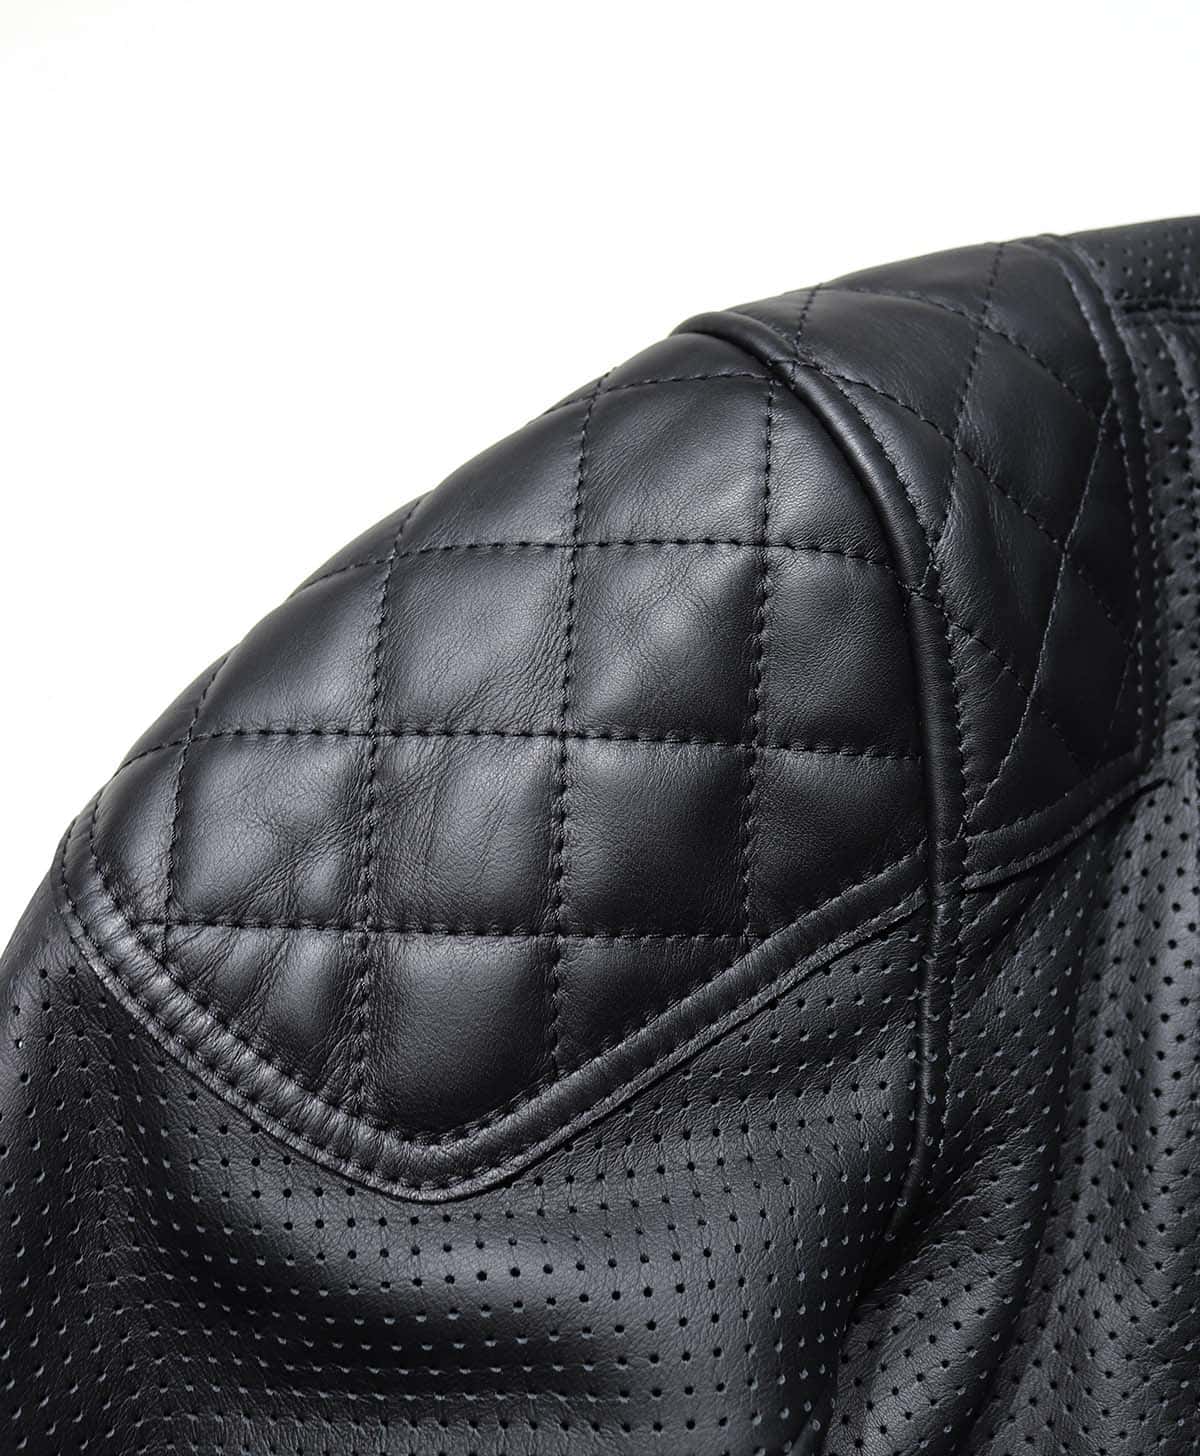 襟、ポケット、肩肘パッドには、安全性と着心地を考慮し通常スムースレザーを配置したコンビネーションデザイン